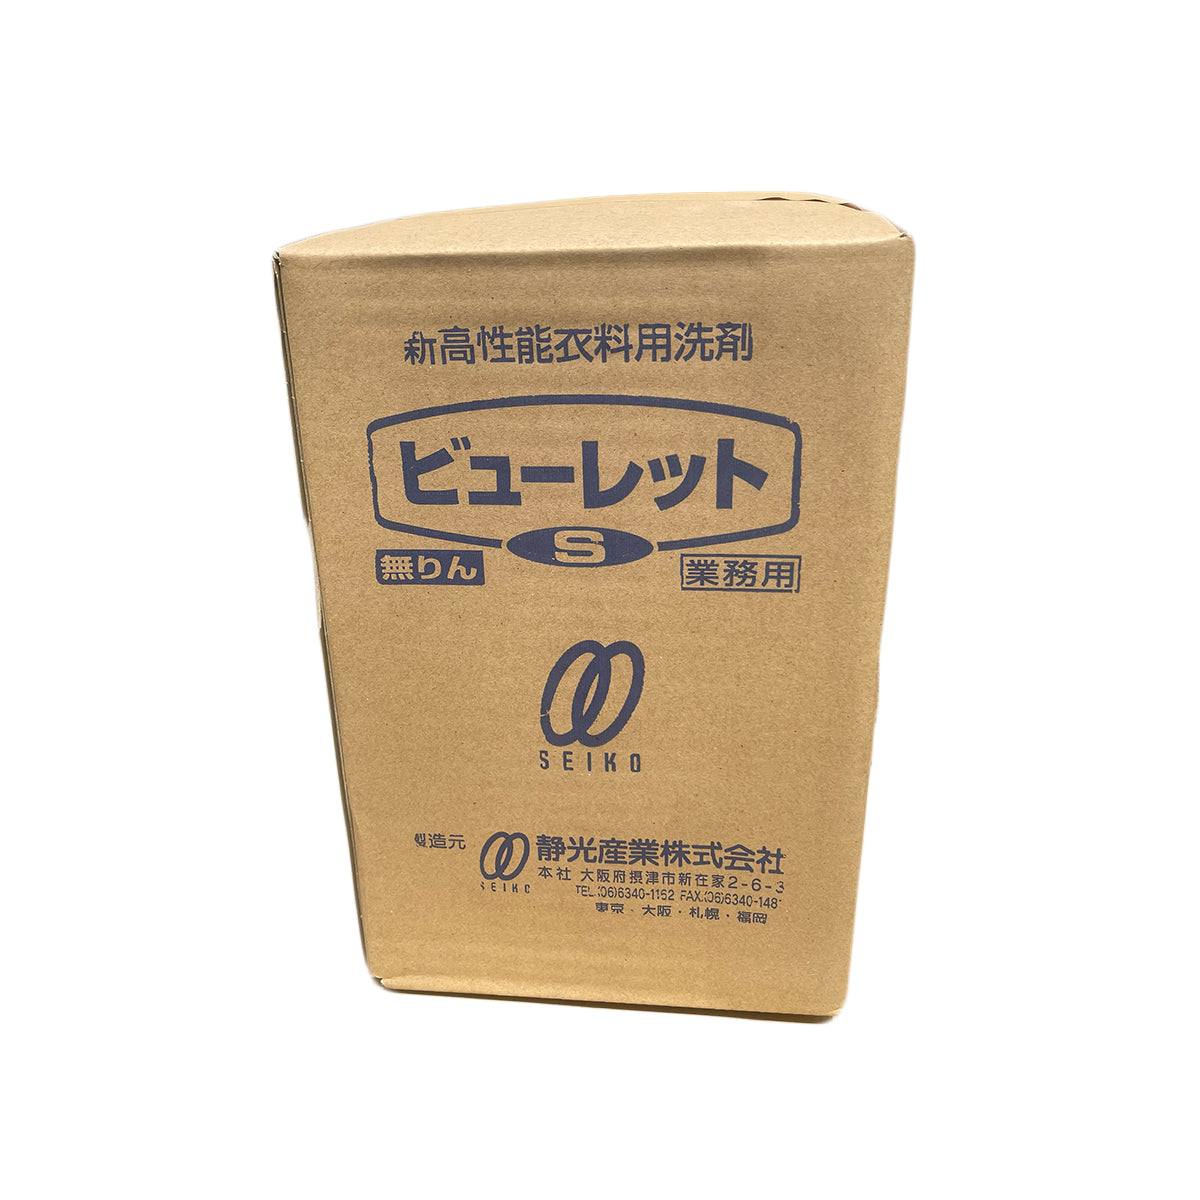 【洗濯洗剤】ケース販売 静光産業 サンレット ビューレットS 6kg 3個セット